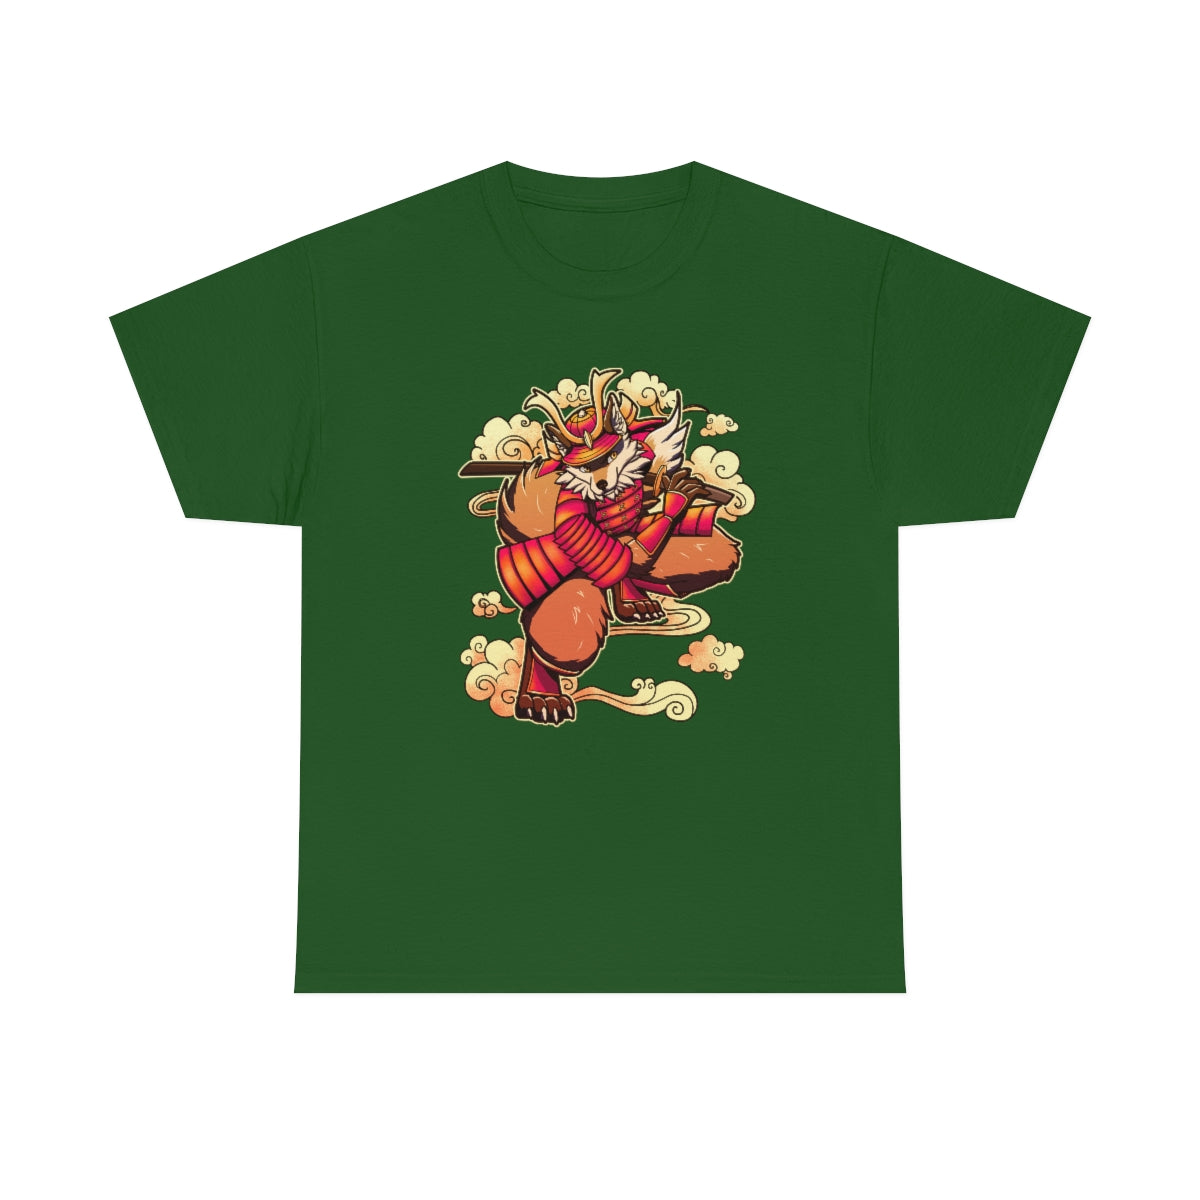 Samurai - T-Shirt T-Shirt Artworktee Green S 